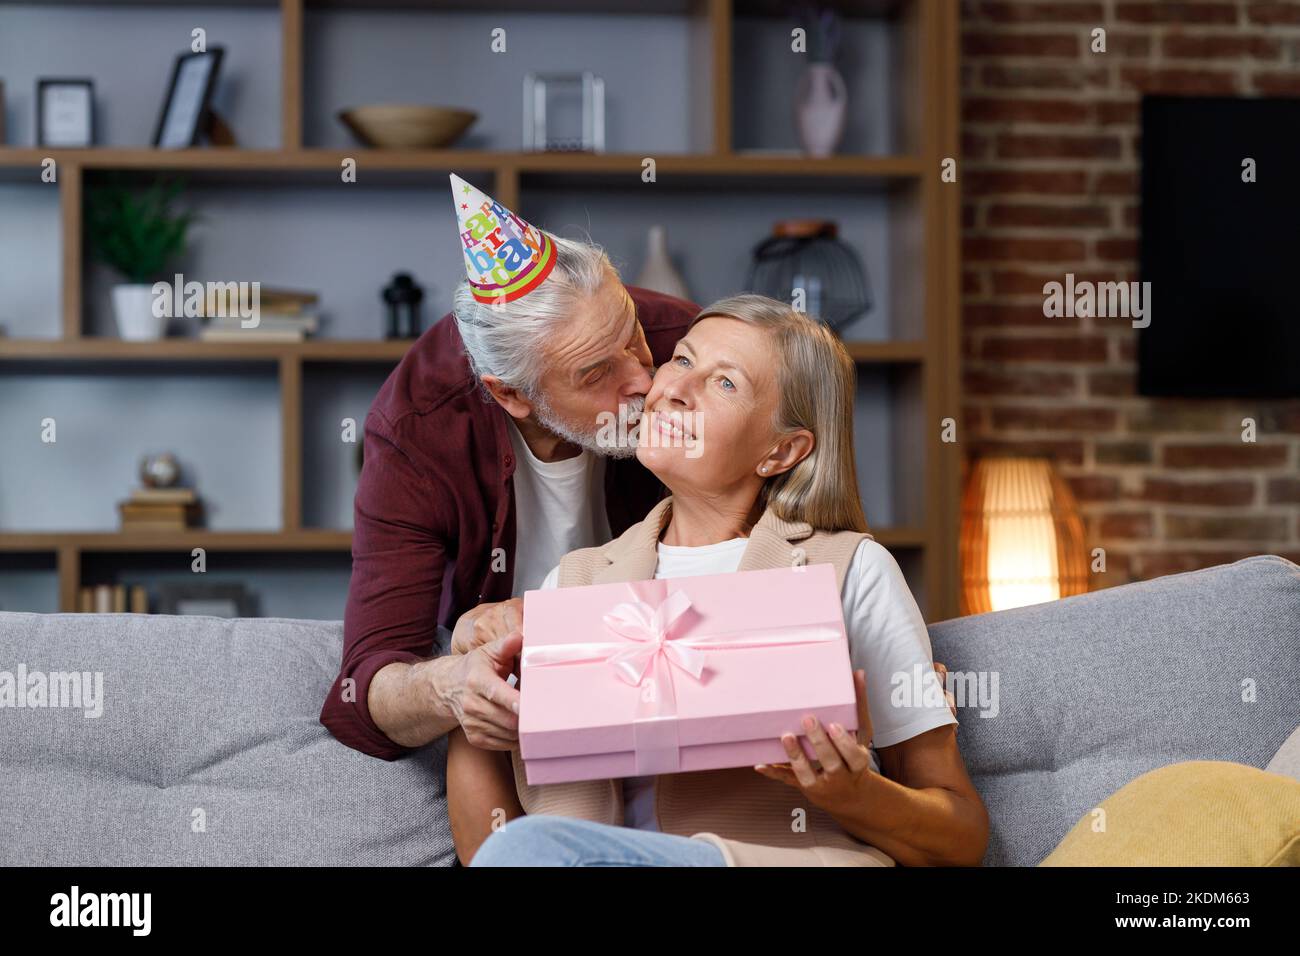 Un vieux mari attentionné donnant un cadeau d'anniversaire romantique à une femme adulte excitée, un homme plus âgé surprise heureuse femme d'âge moyen, boîte rose ouverte, baiser Banque D'Images